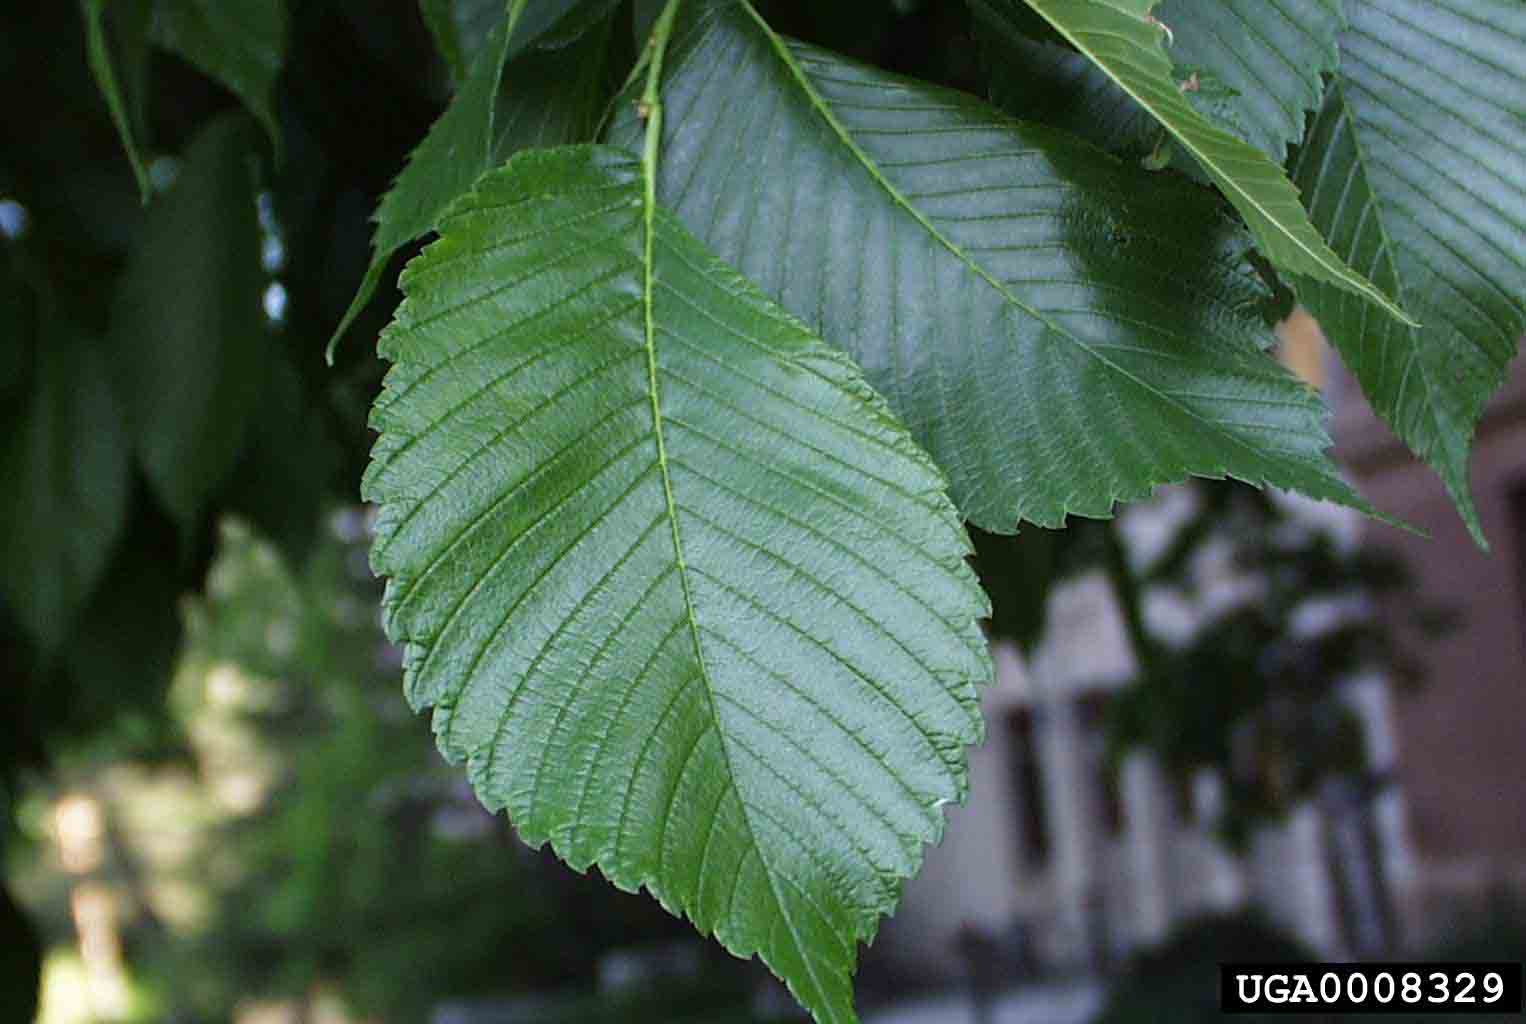 American elm leaf, showing unsymmetrical base